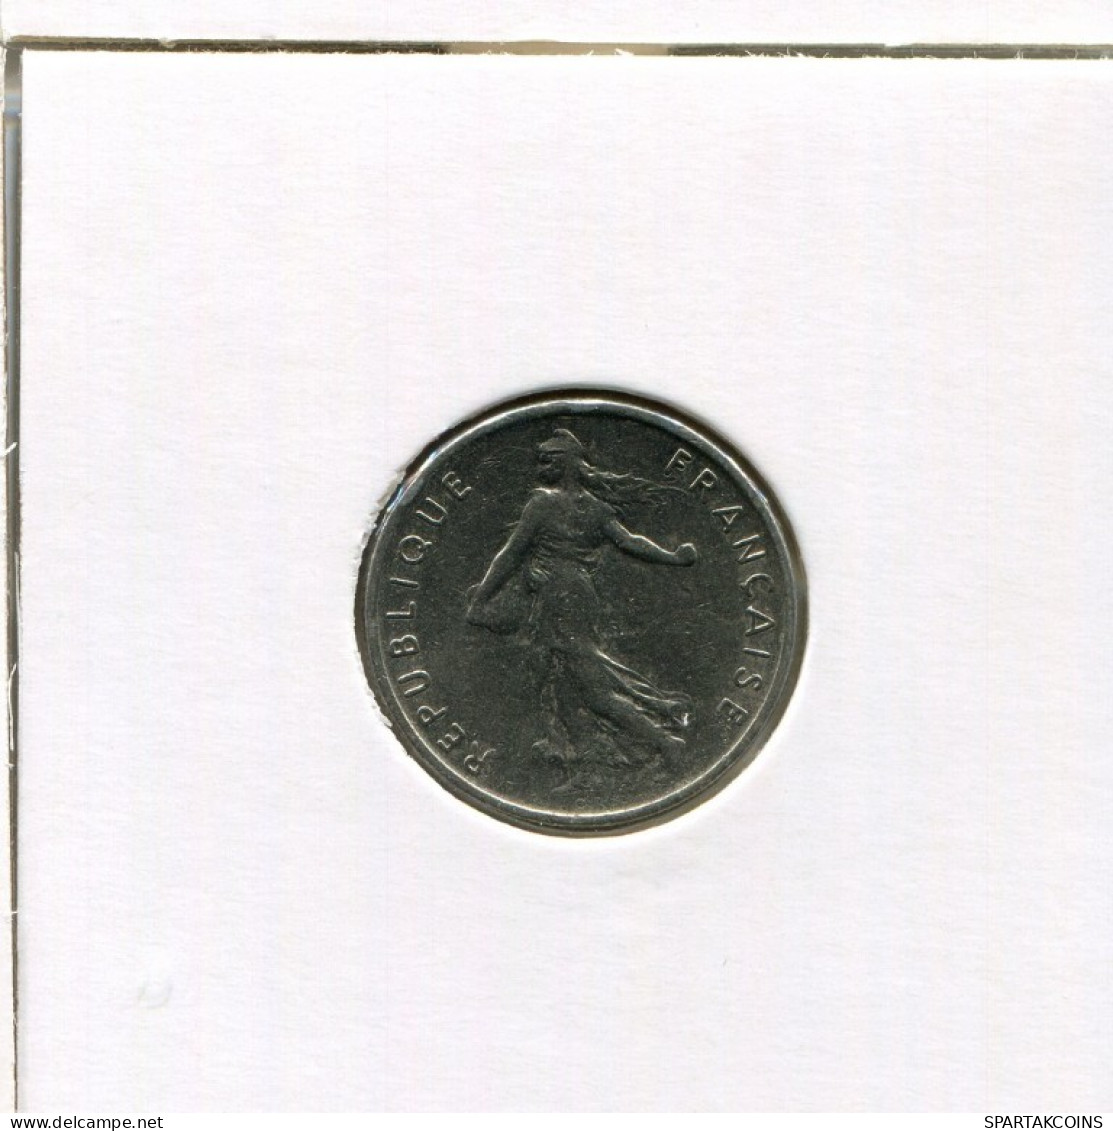 1/2 FRANC 1972 FRANCE Pièce Française #AN239.F.A - 1/2 Franc